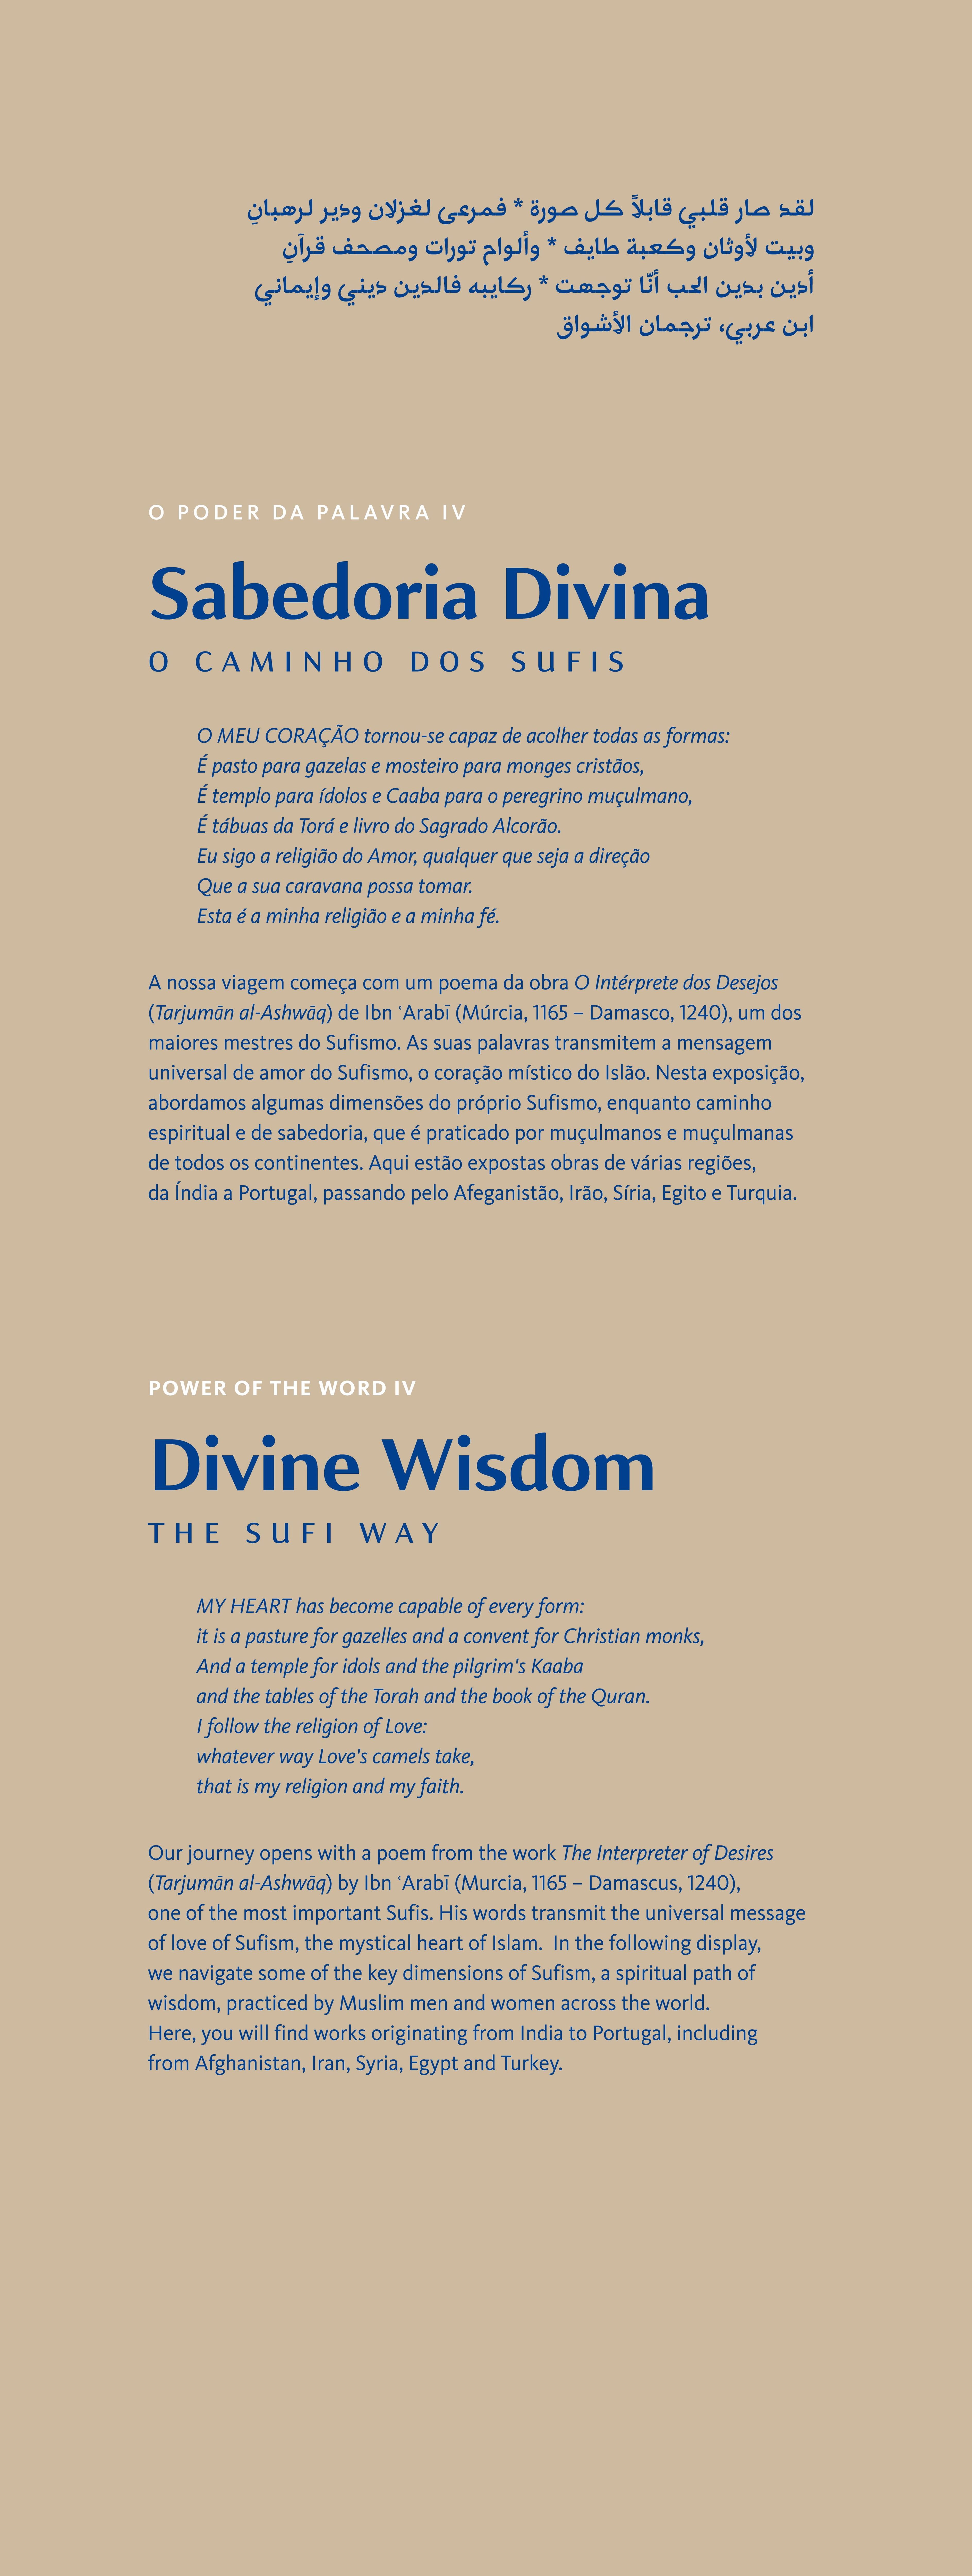 O Poder da Palavra IV. Sabedoria Divina: O Caminho dos Sufis